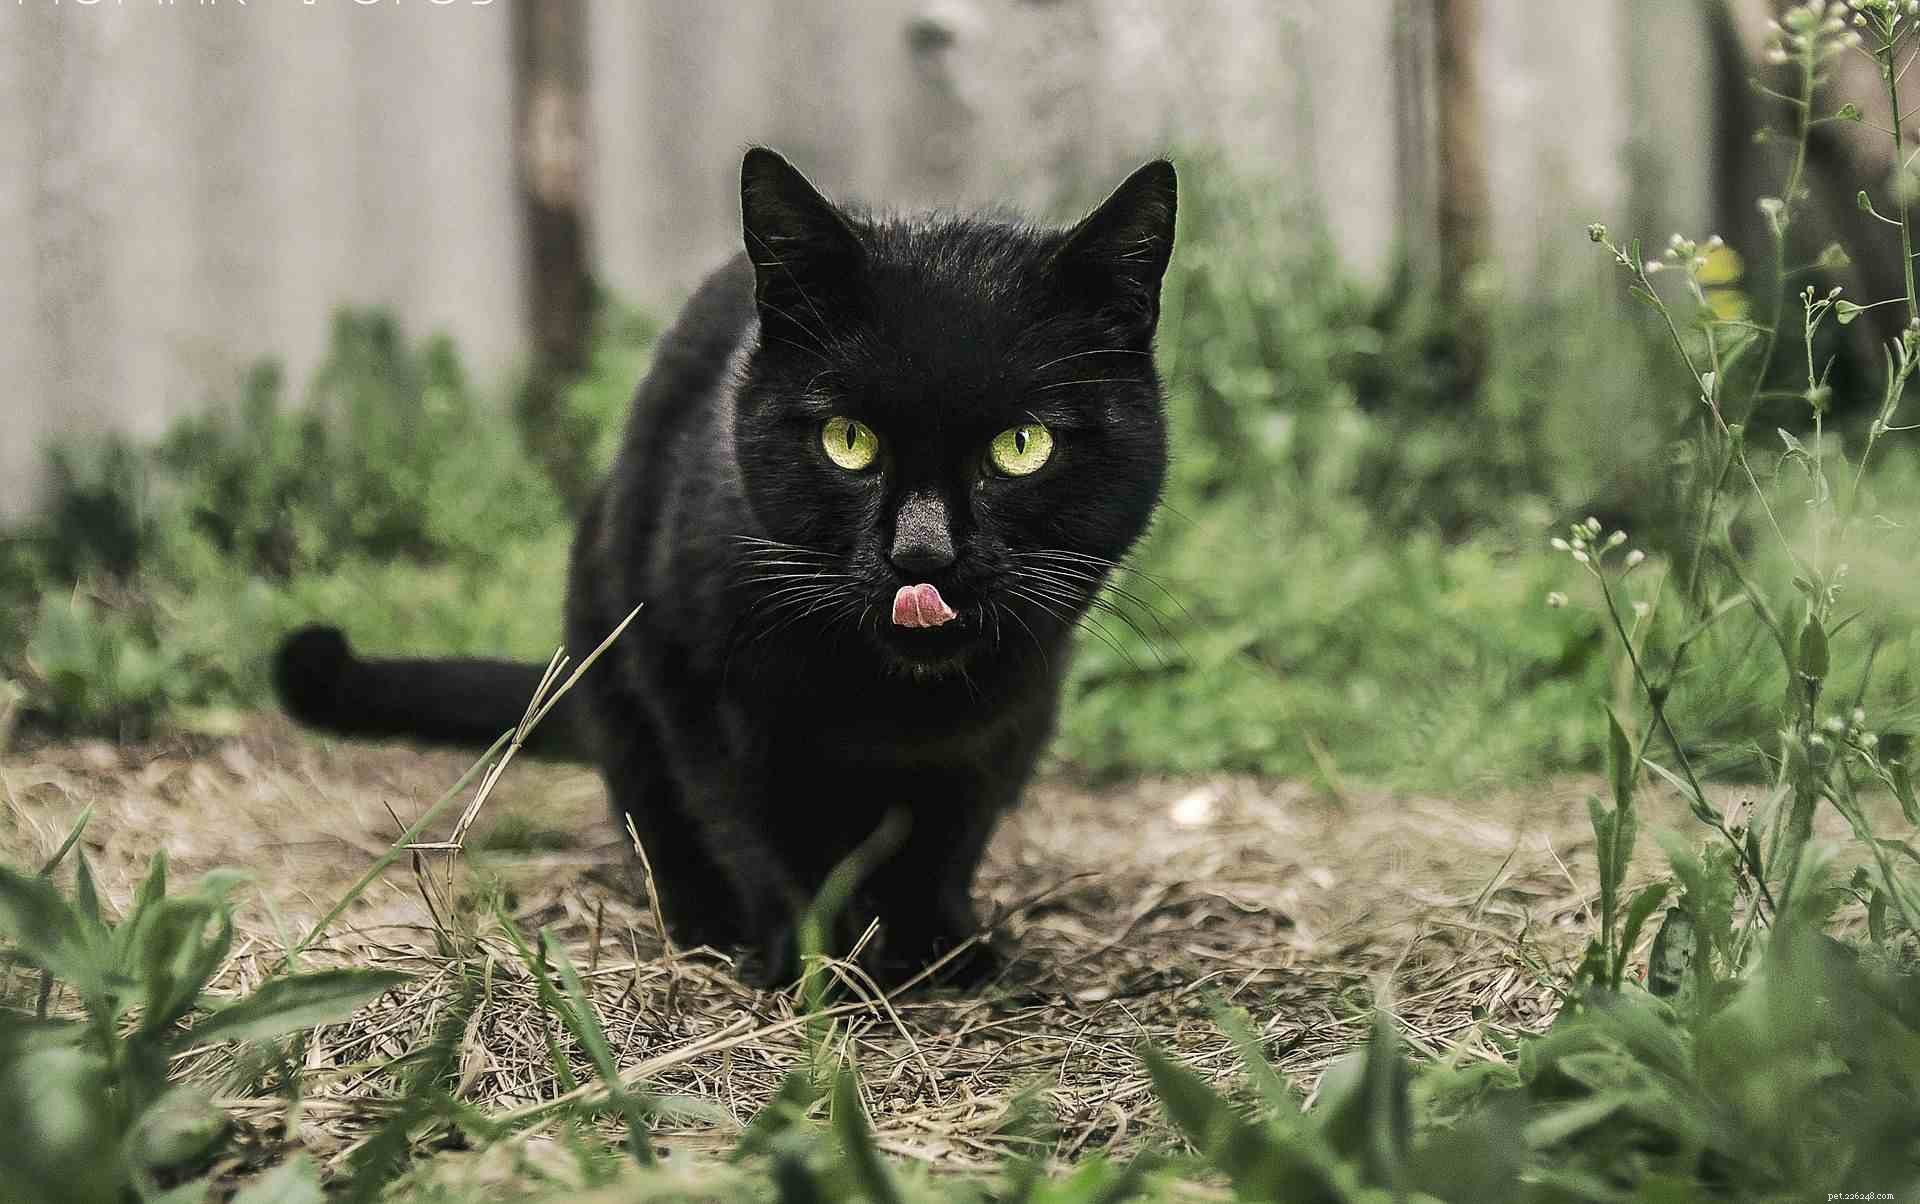 黒猫についての5つの魅力的な事実 